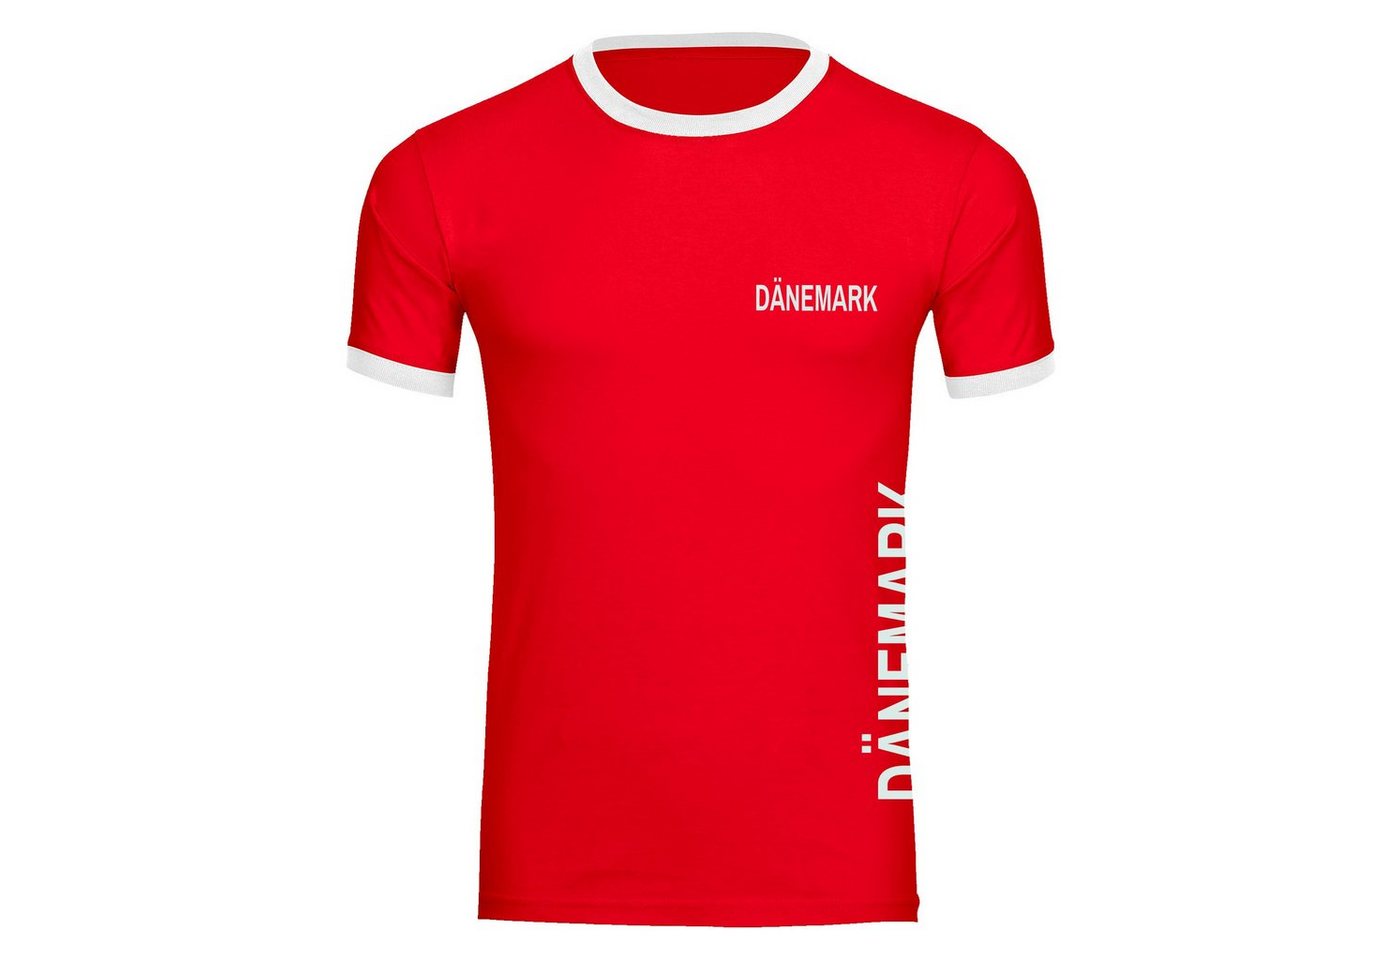 multifanshop T-Shirt Kontrast Dänemark - Brust & Seite - Männer von multifanshop